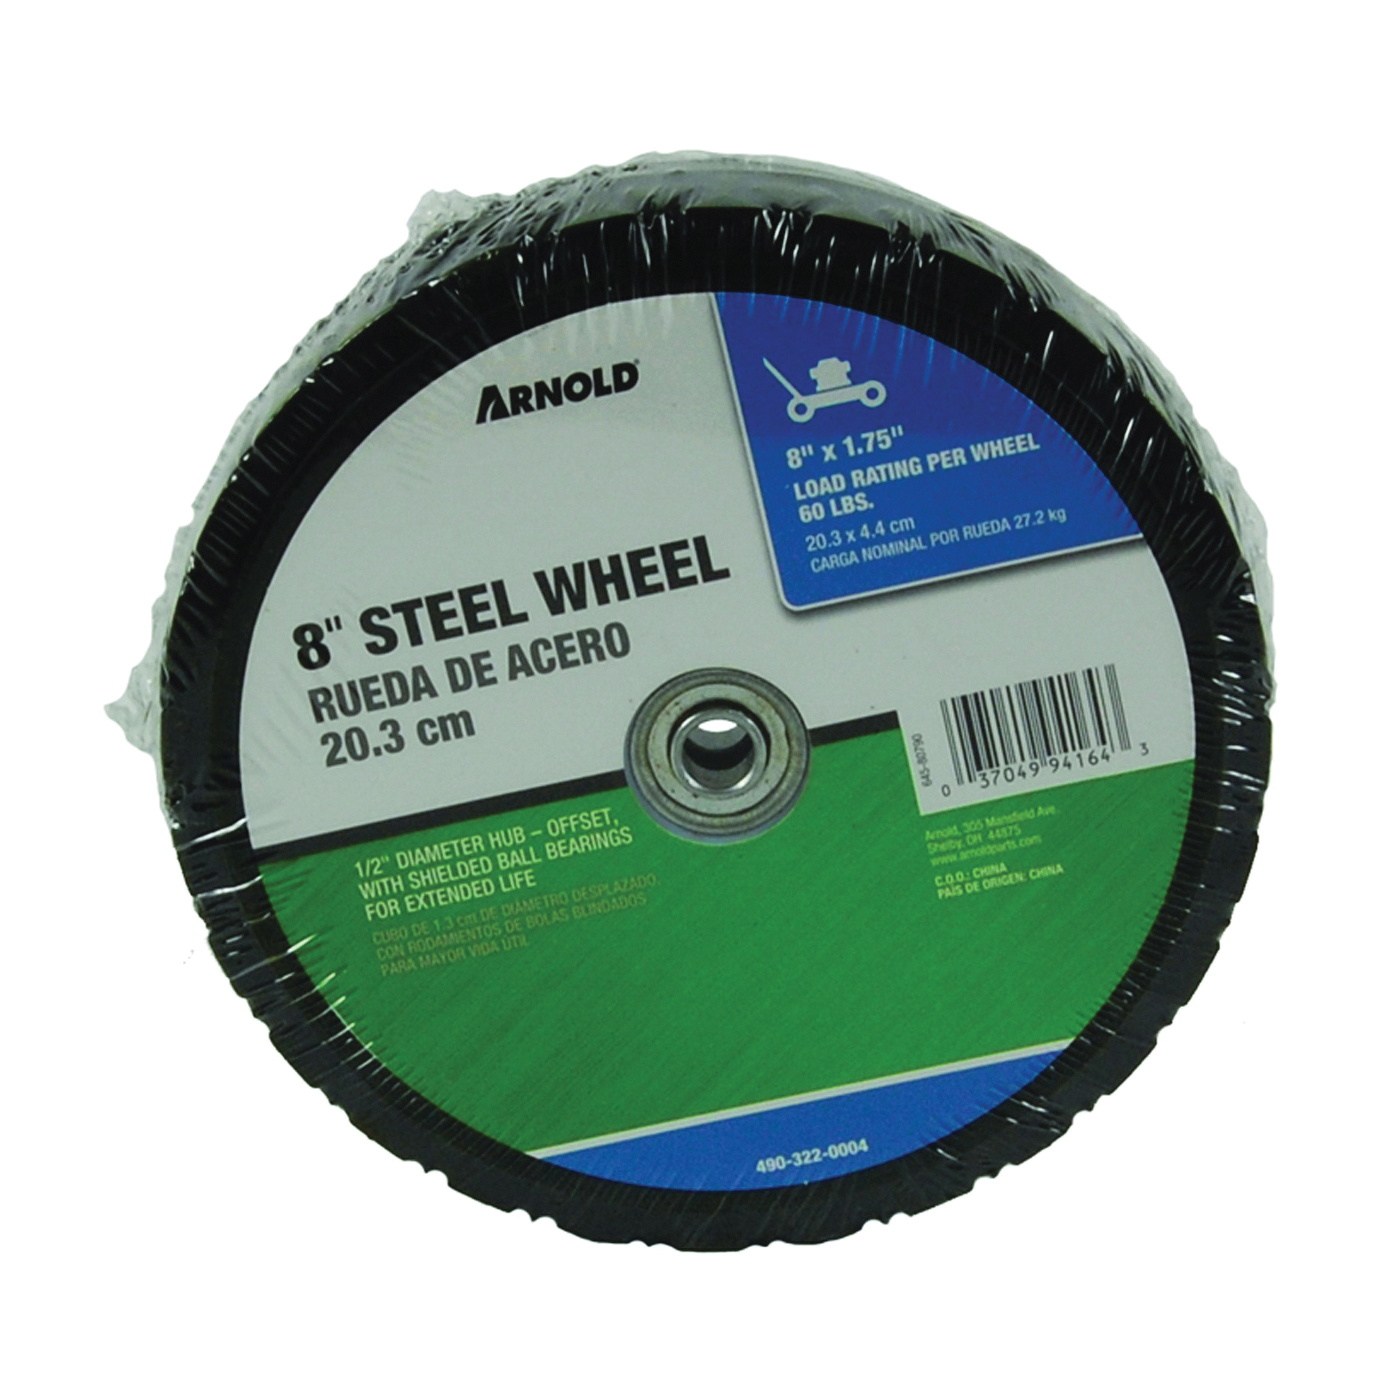 490-322-0004 Tread Wheel, Steel, For: Lawnmowers